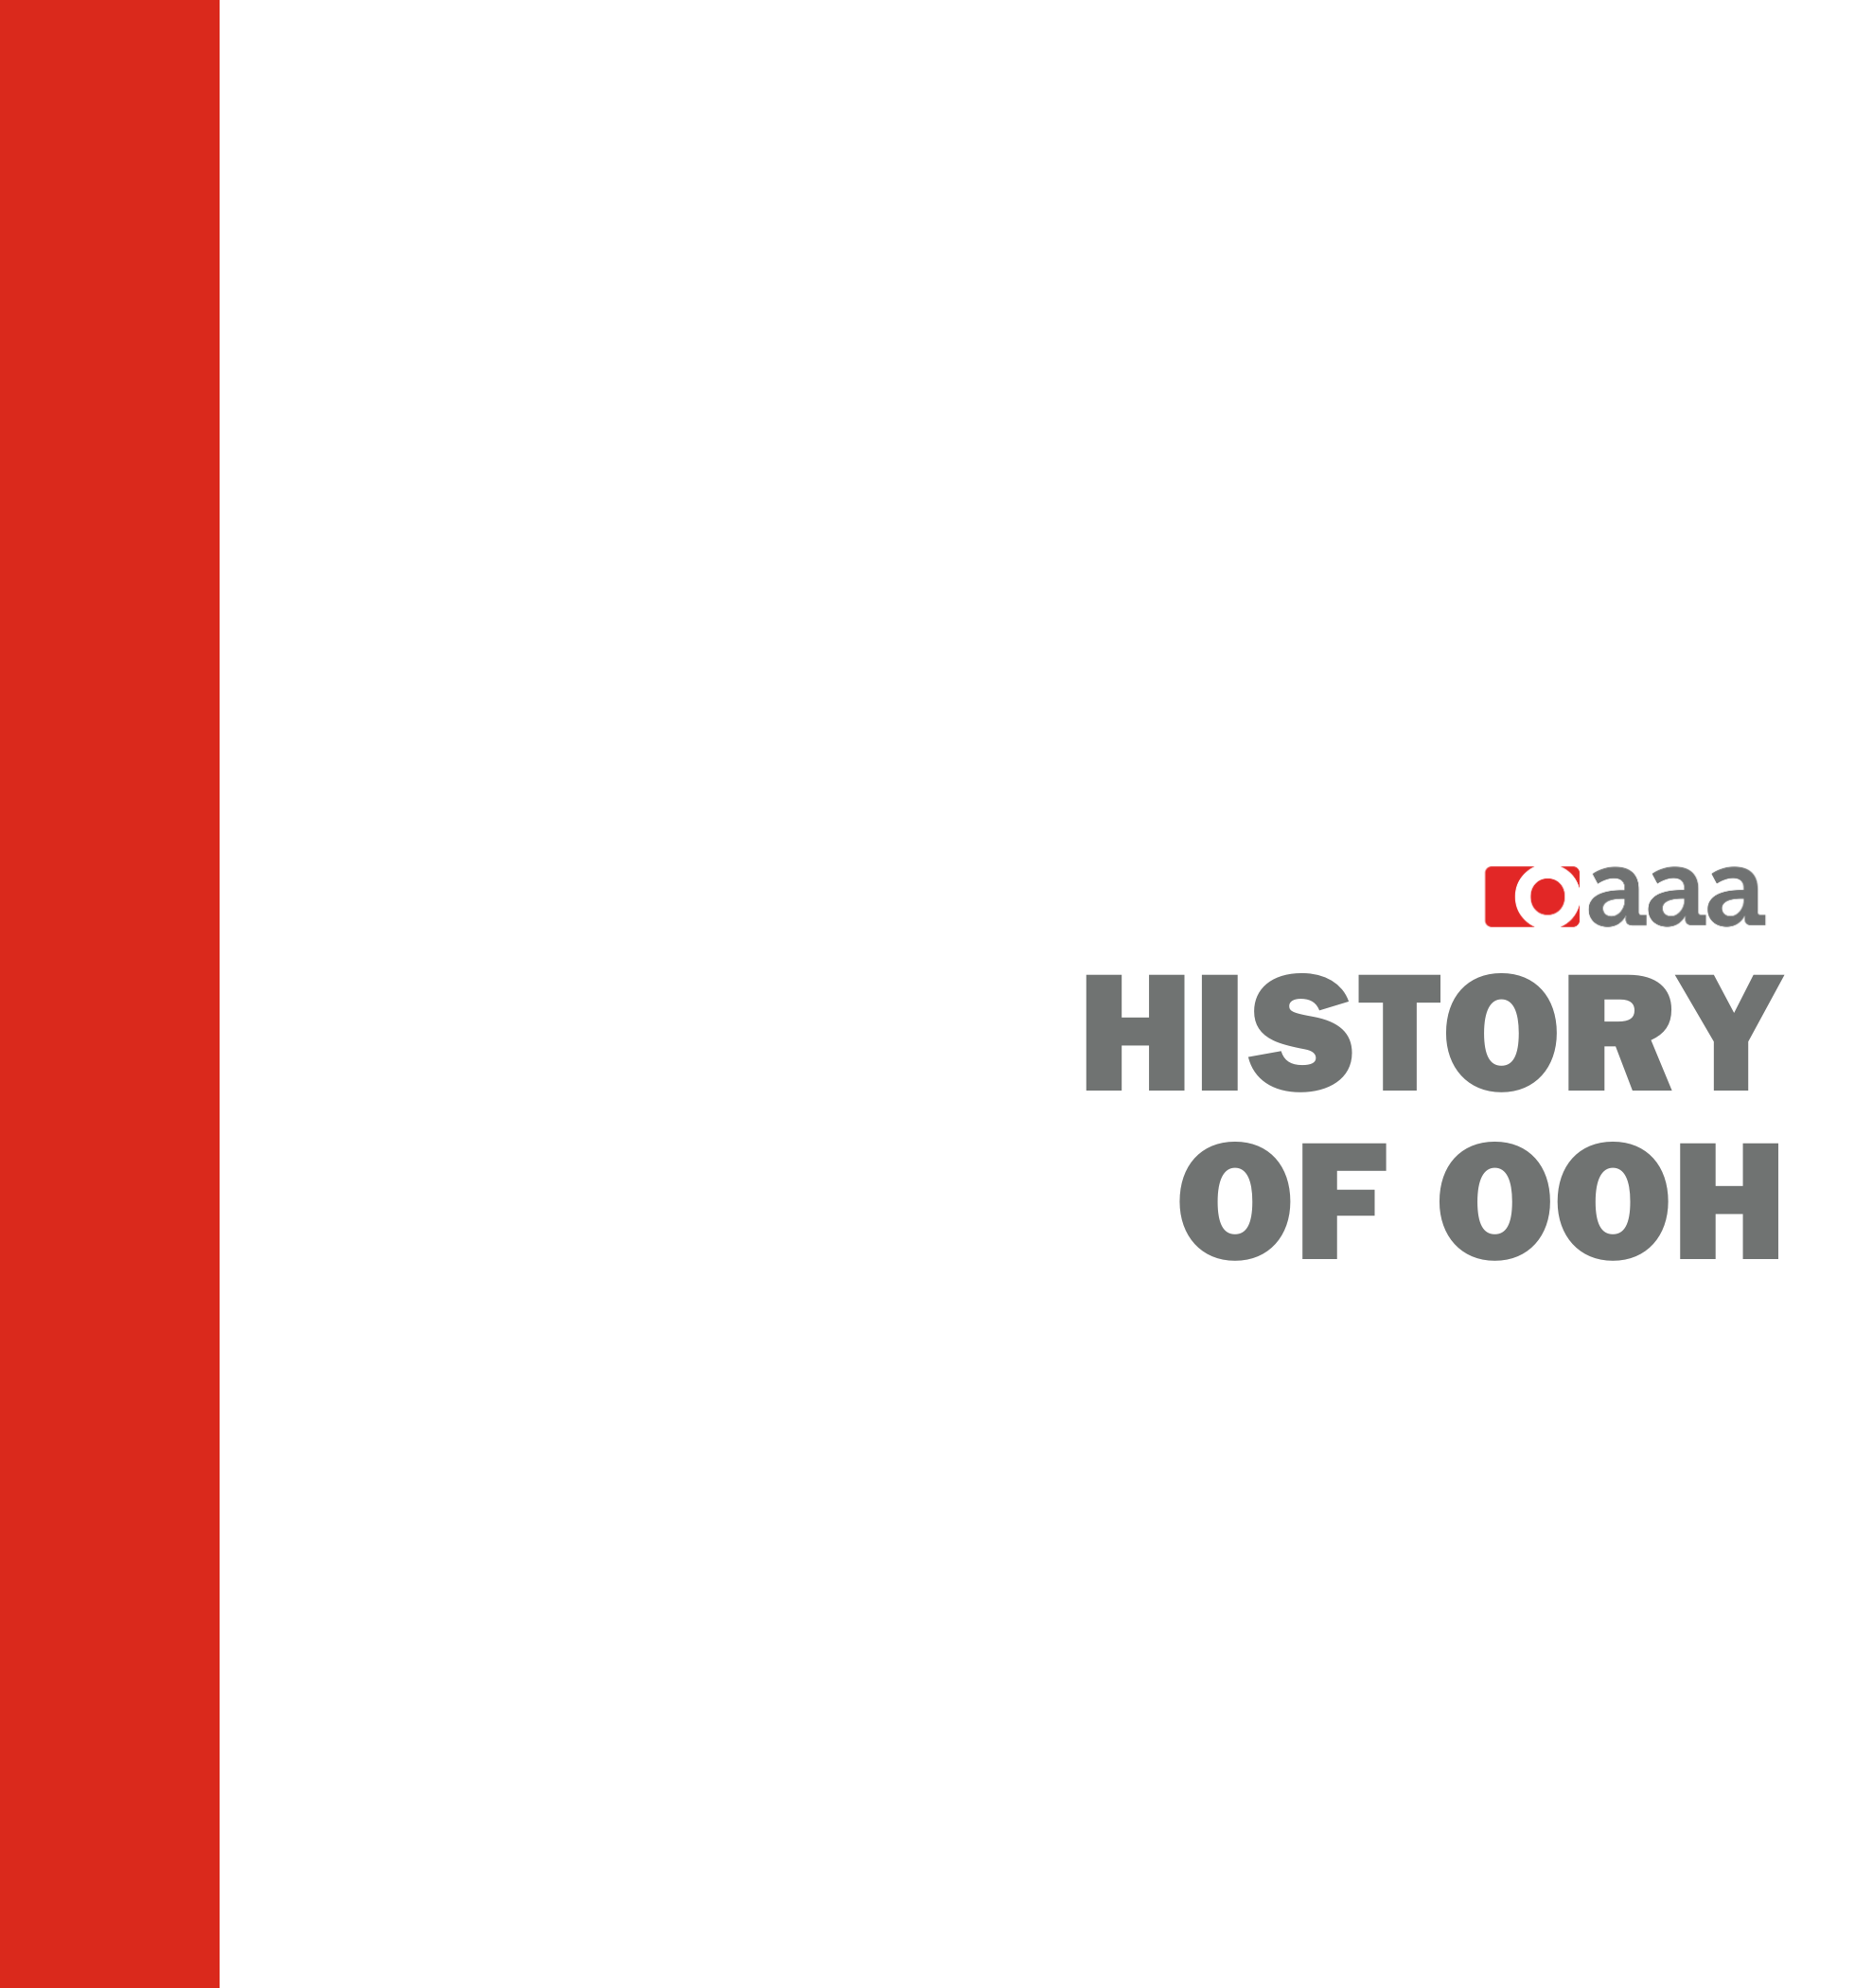 History of OOH